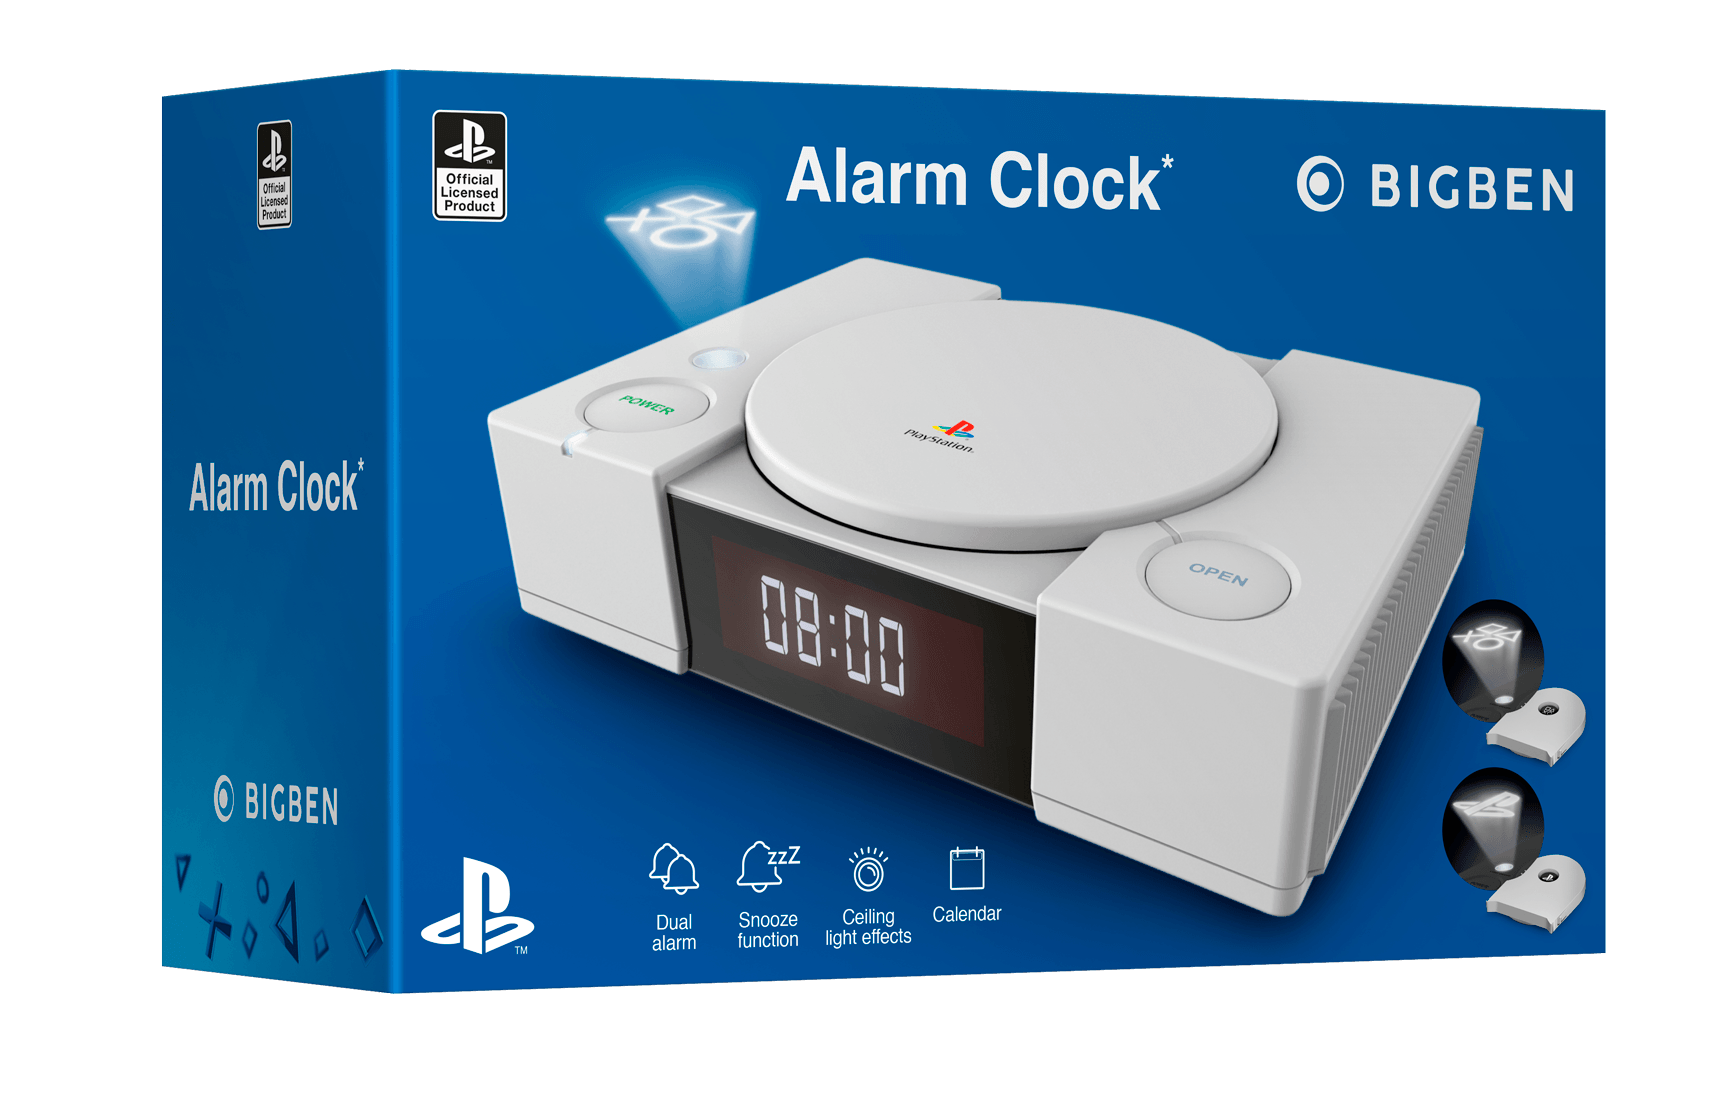 Ps Alarm Clock - Want a New Gadget